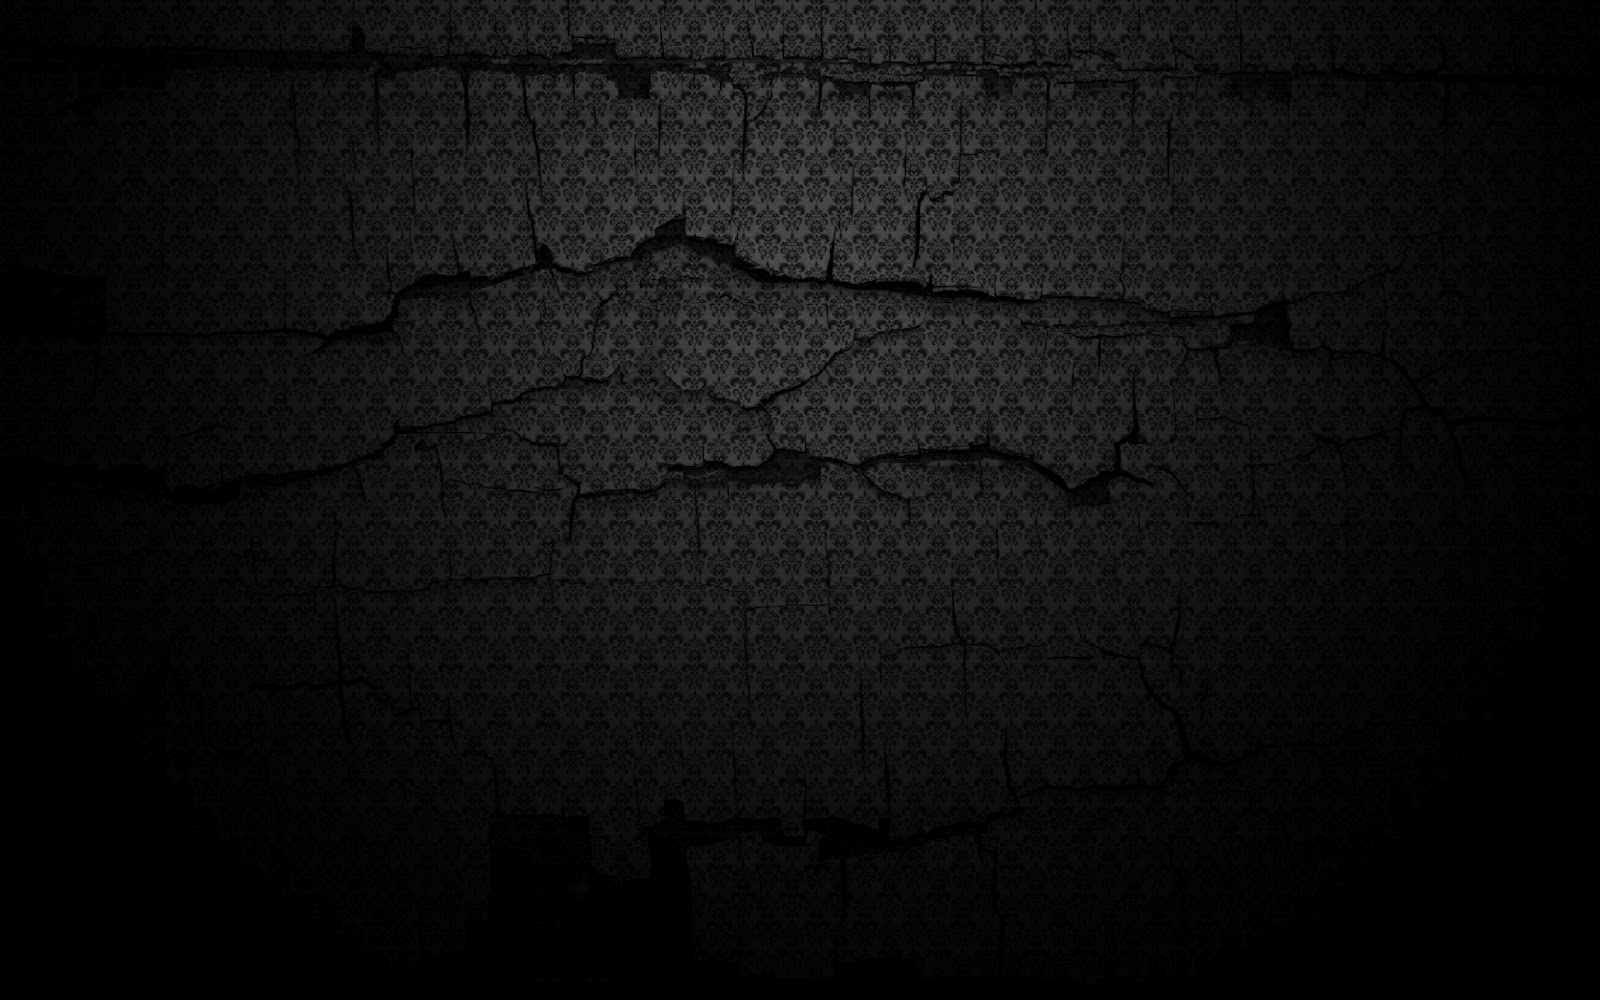 Dark Background Image Px High